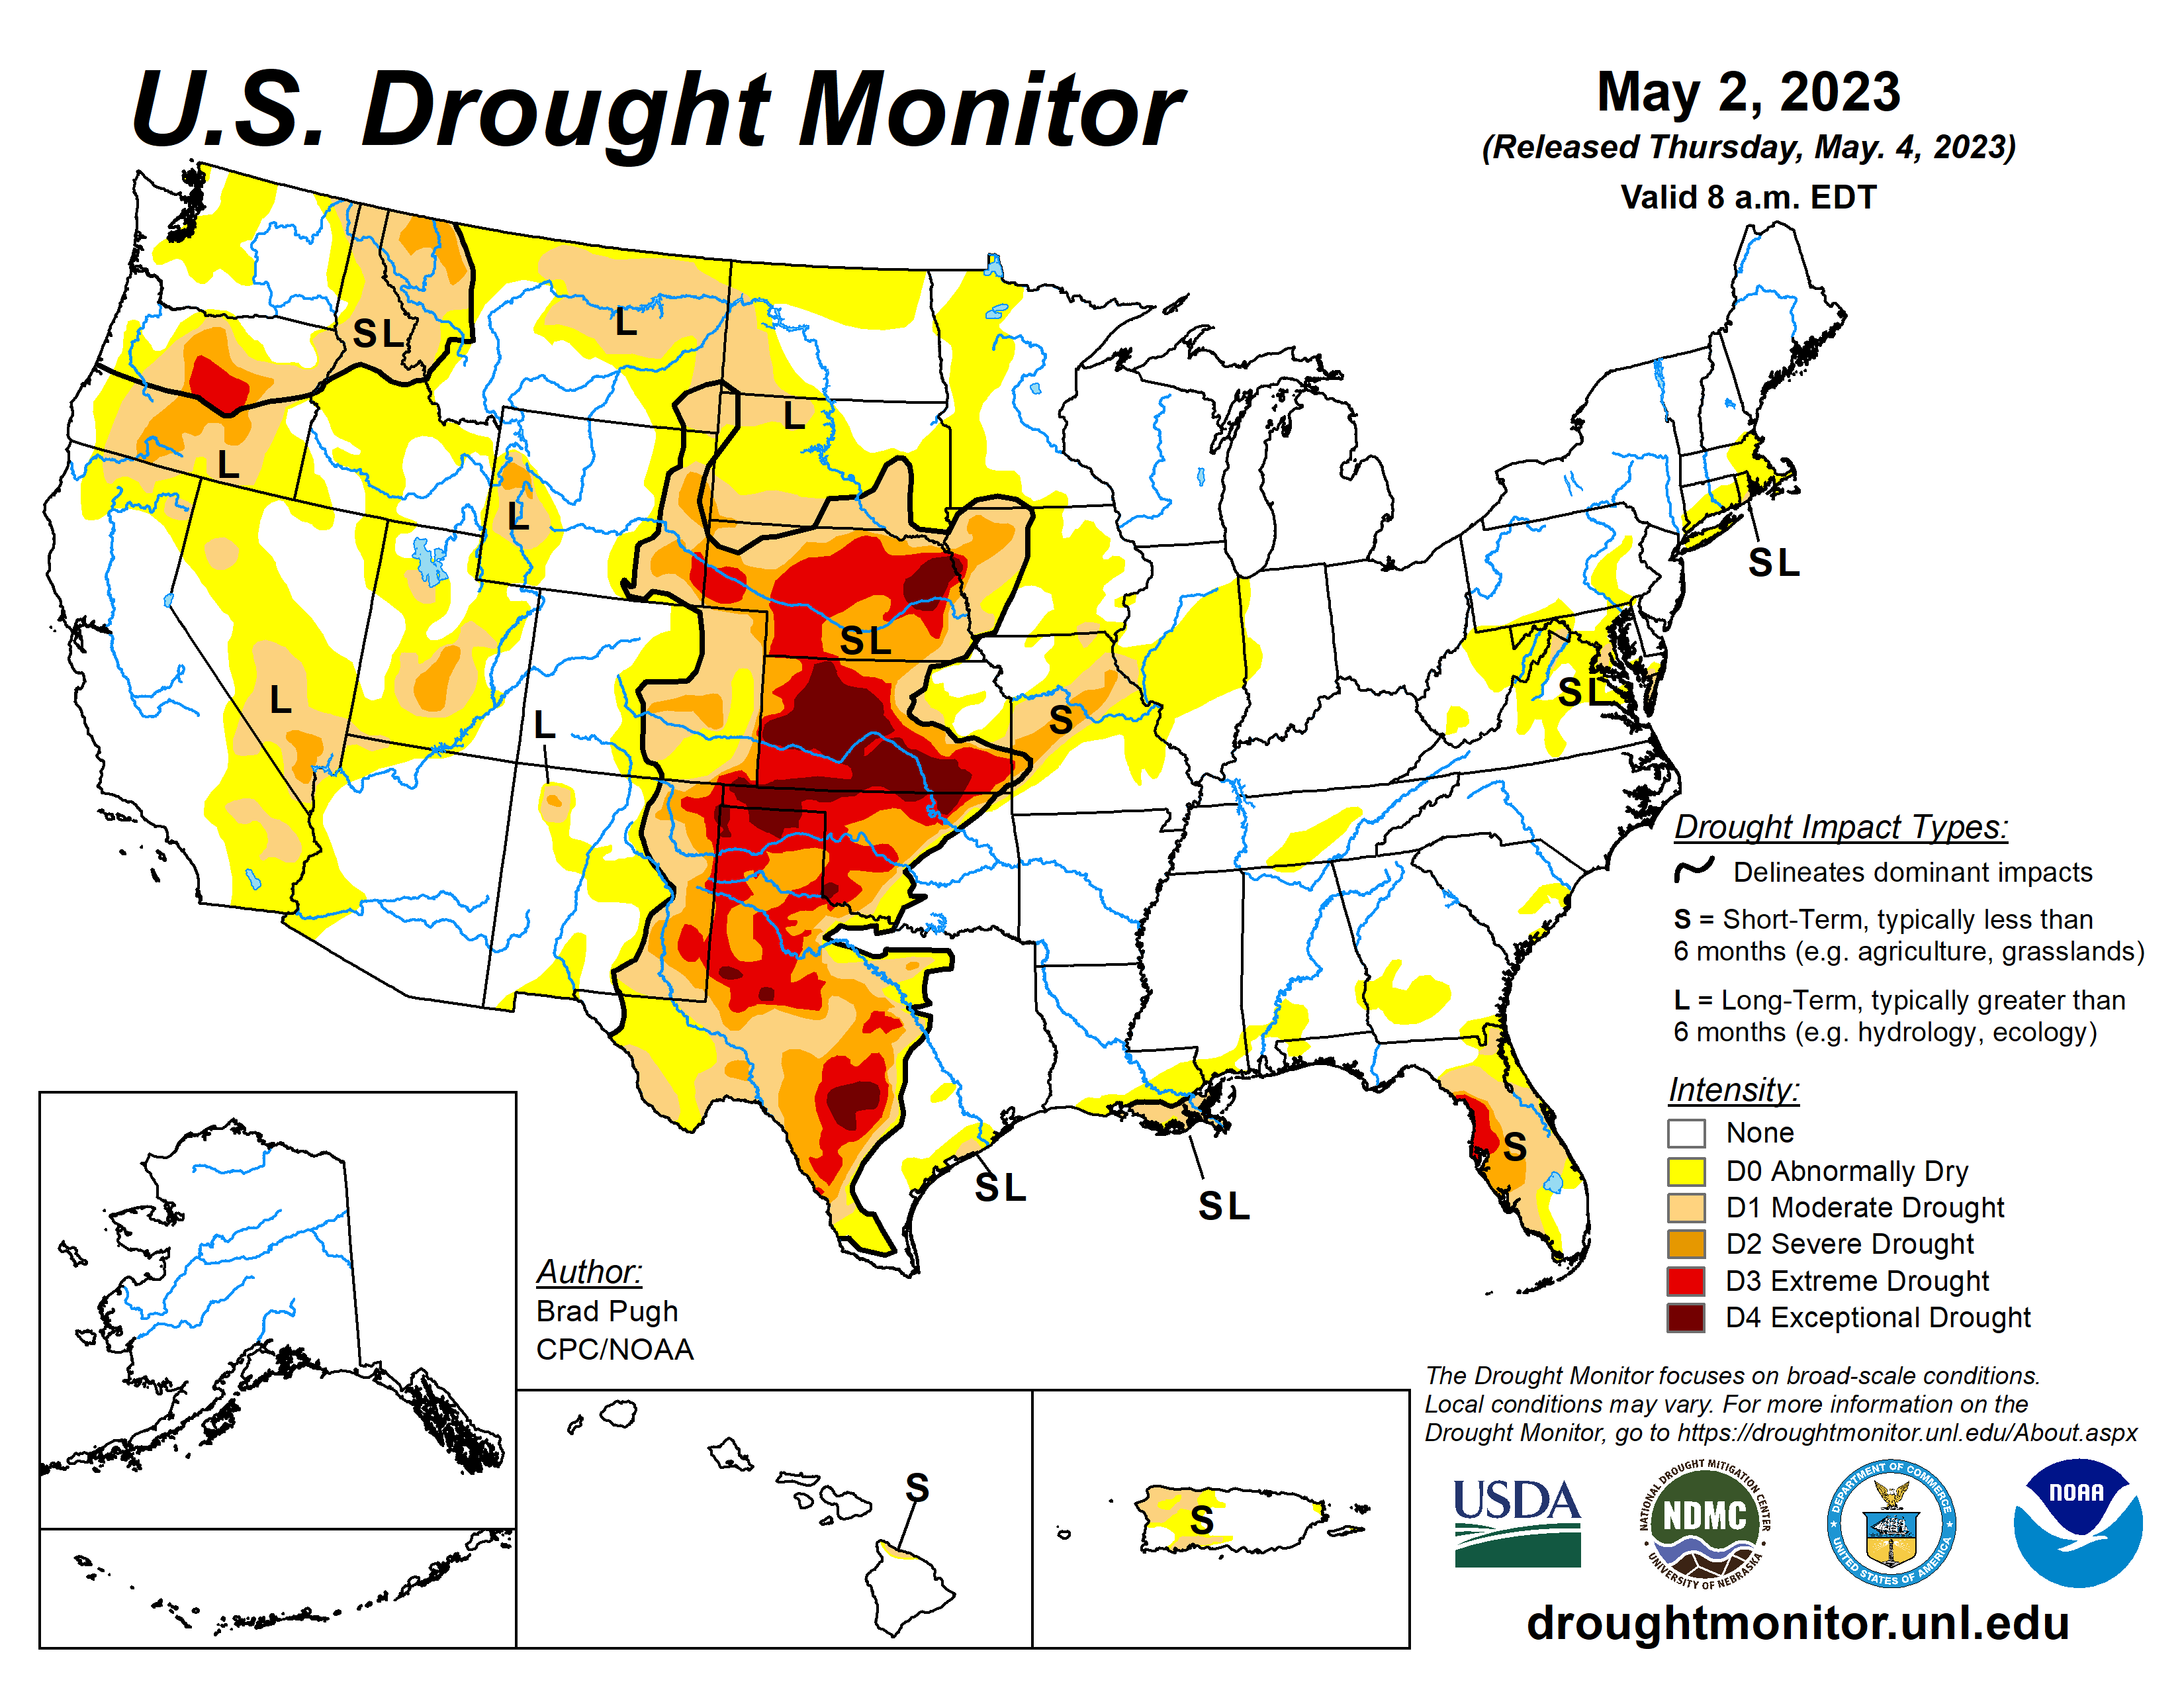 U.S. Drought Monitor map